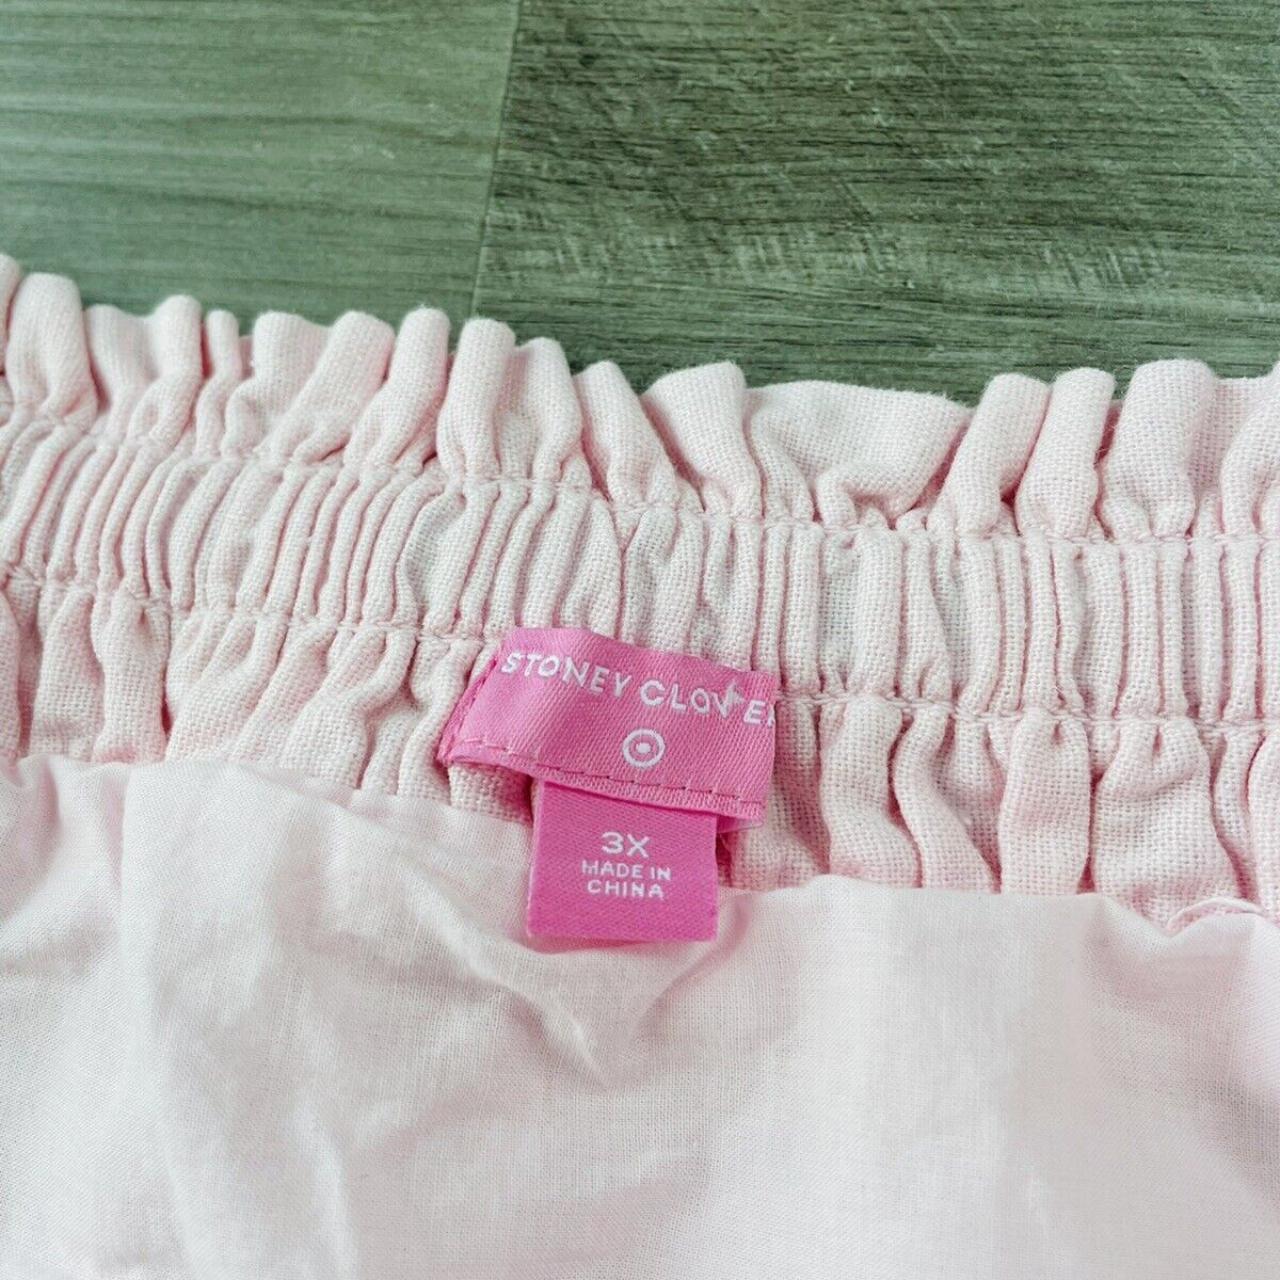 Stoney Clover x Target Pink Linen Skirt Size 3X Plus... - Depop